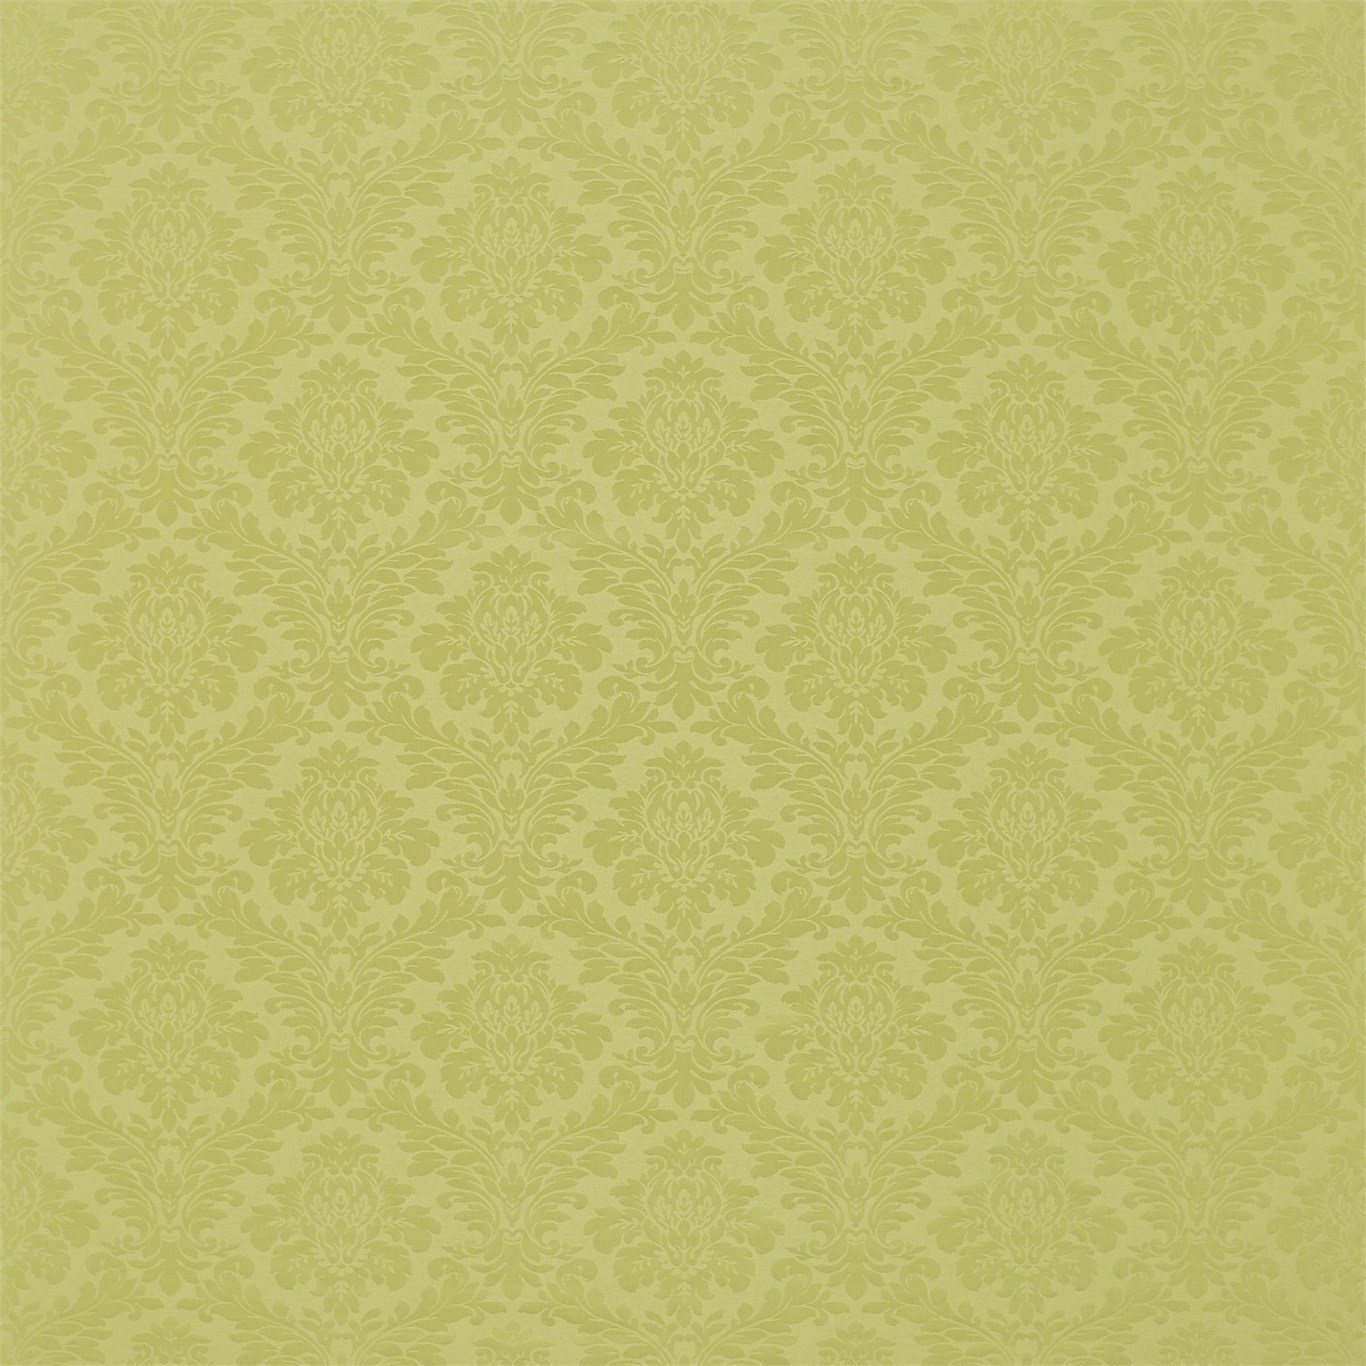 Lymington Damask Leaf Green Fabric by SAN